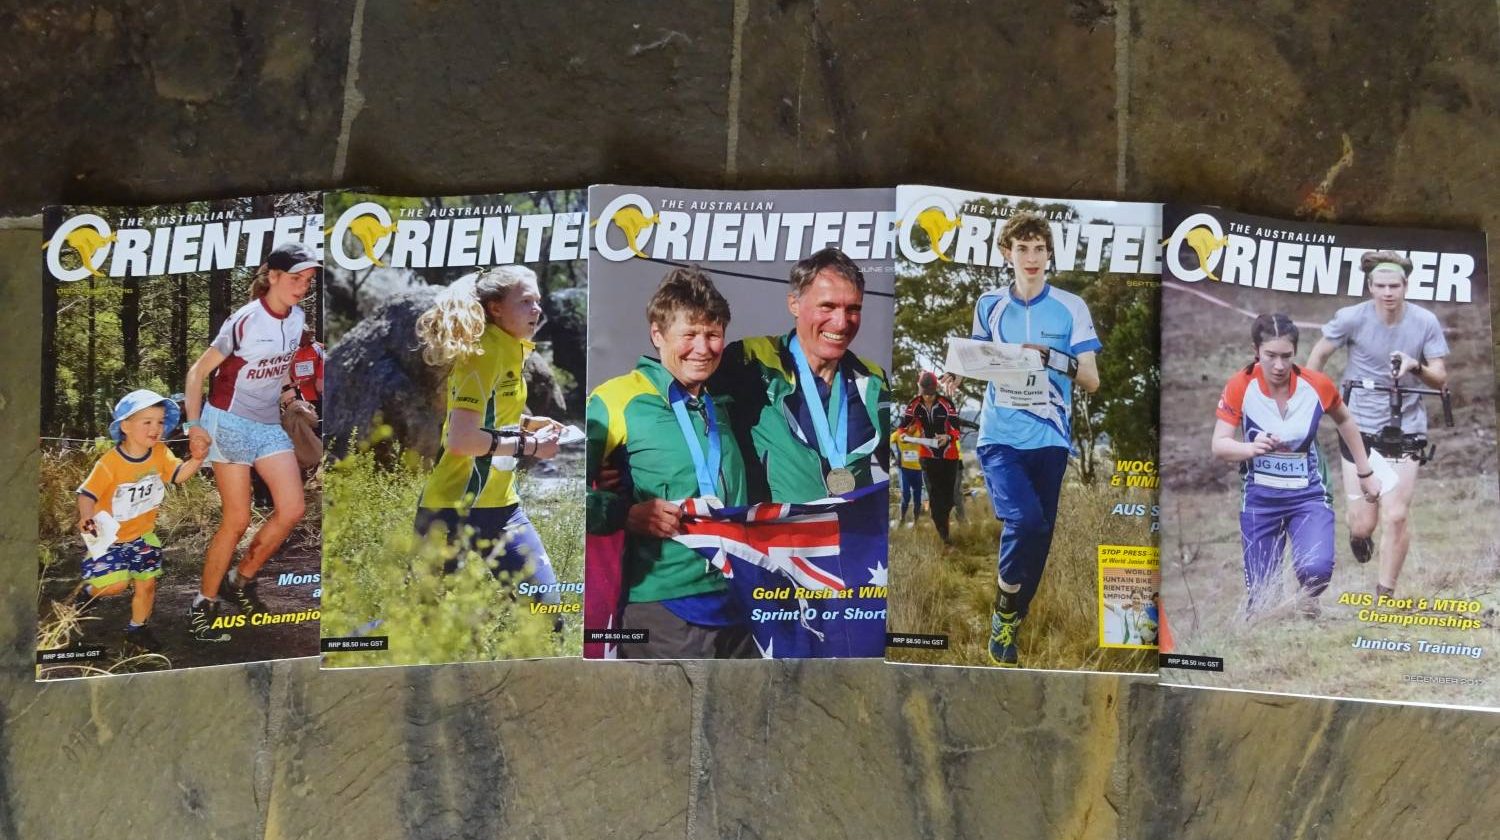 Australian Orienteer Magazine “Opt-in”